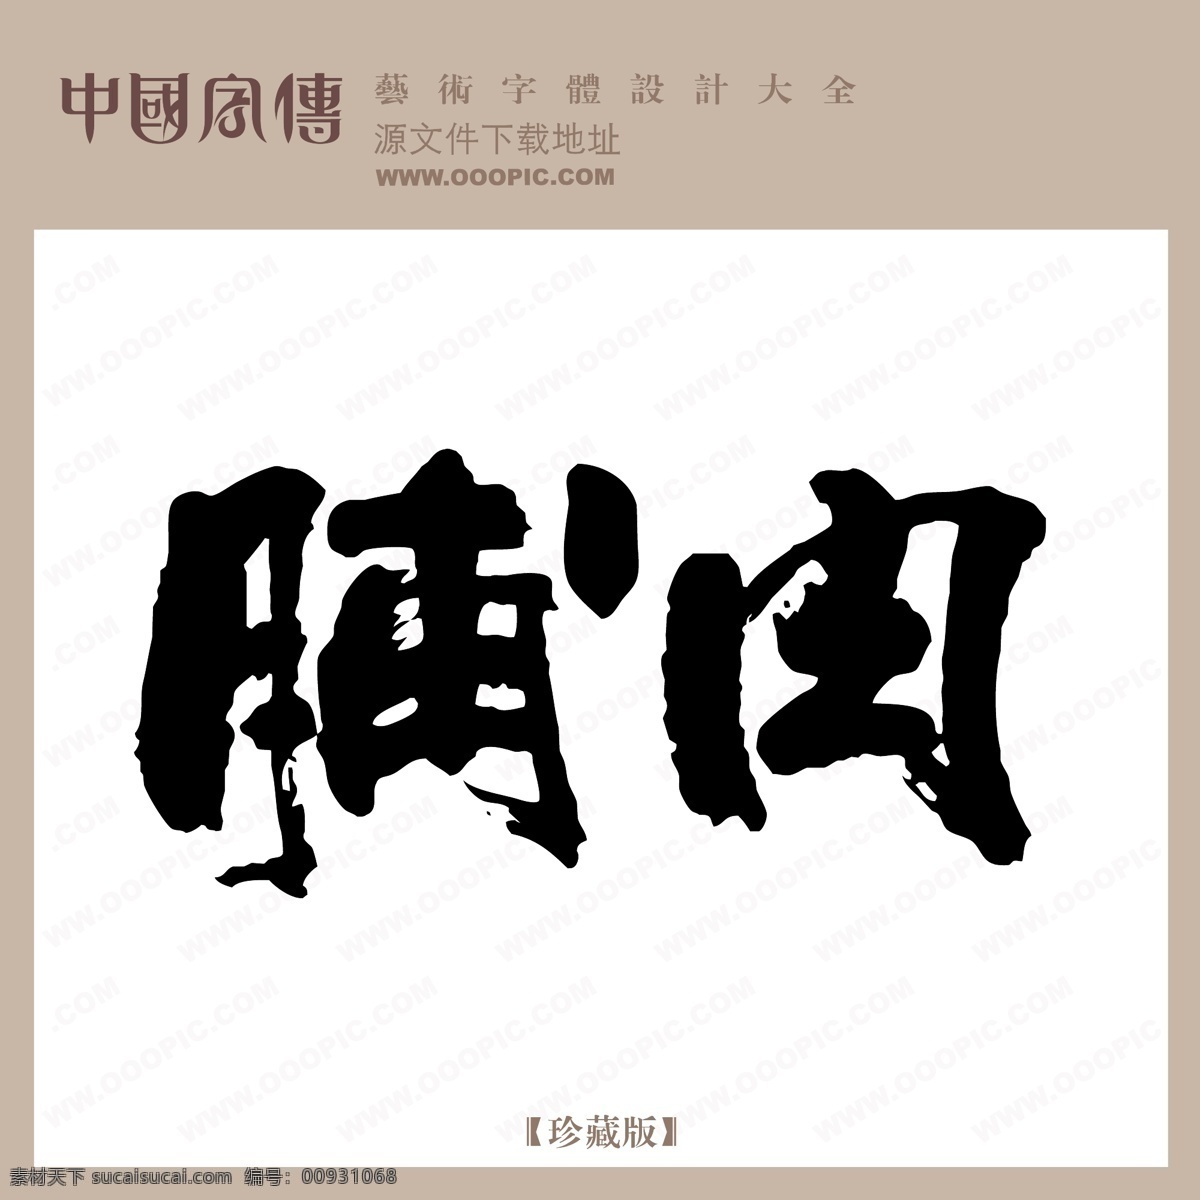 脯 肉 中文 现代艺术 字 创意 美工 艺术 中国字体下载 脯肉 矢量图